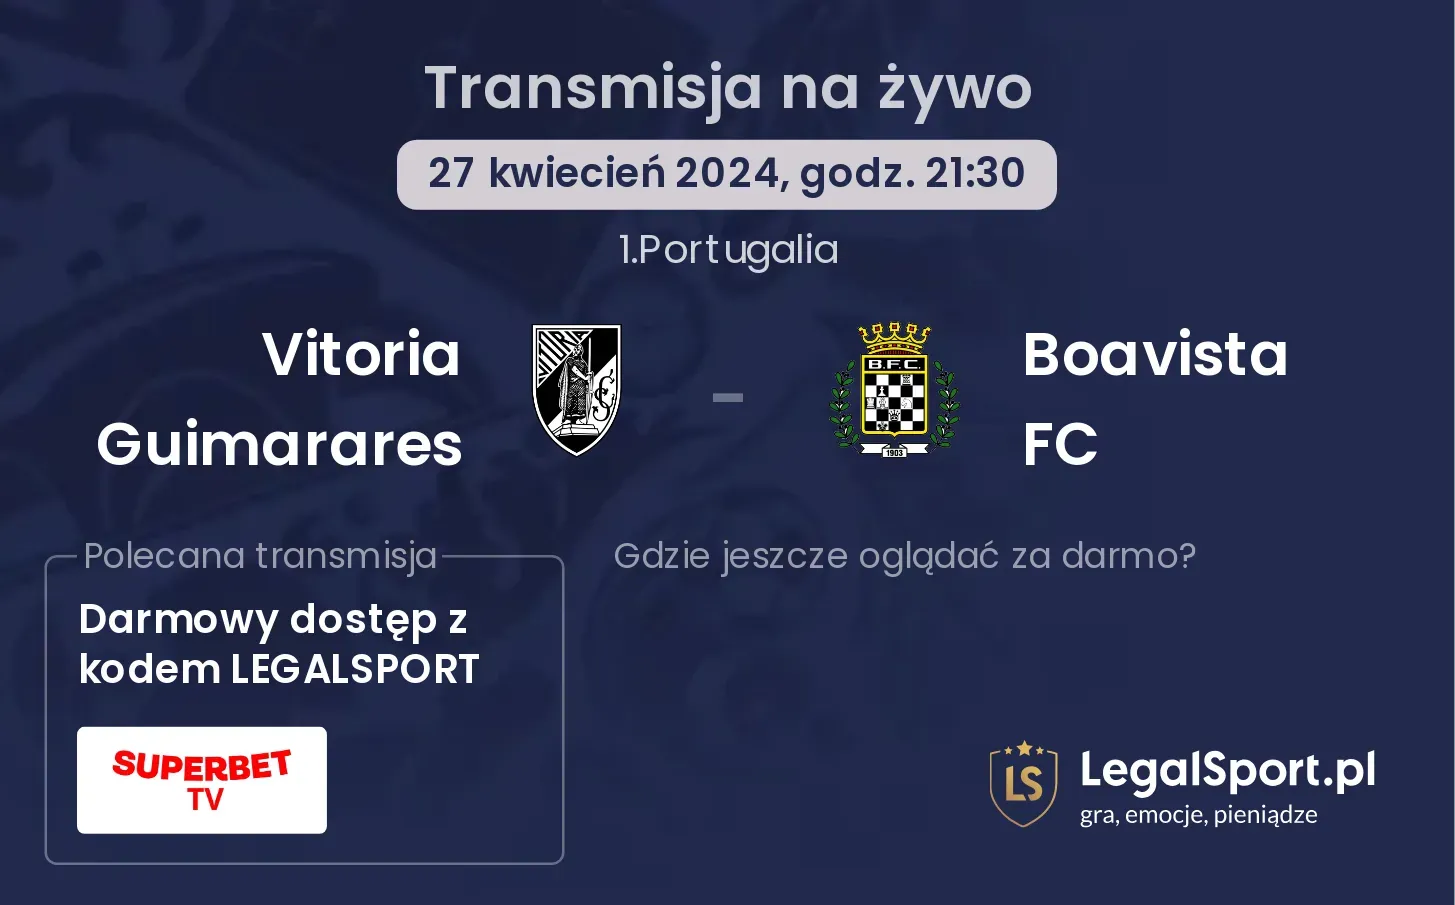 Vitoria Guimarares - Boavista FC transmisja na żywo